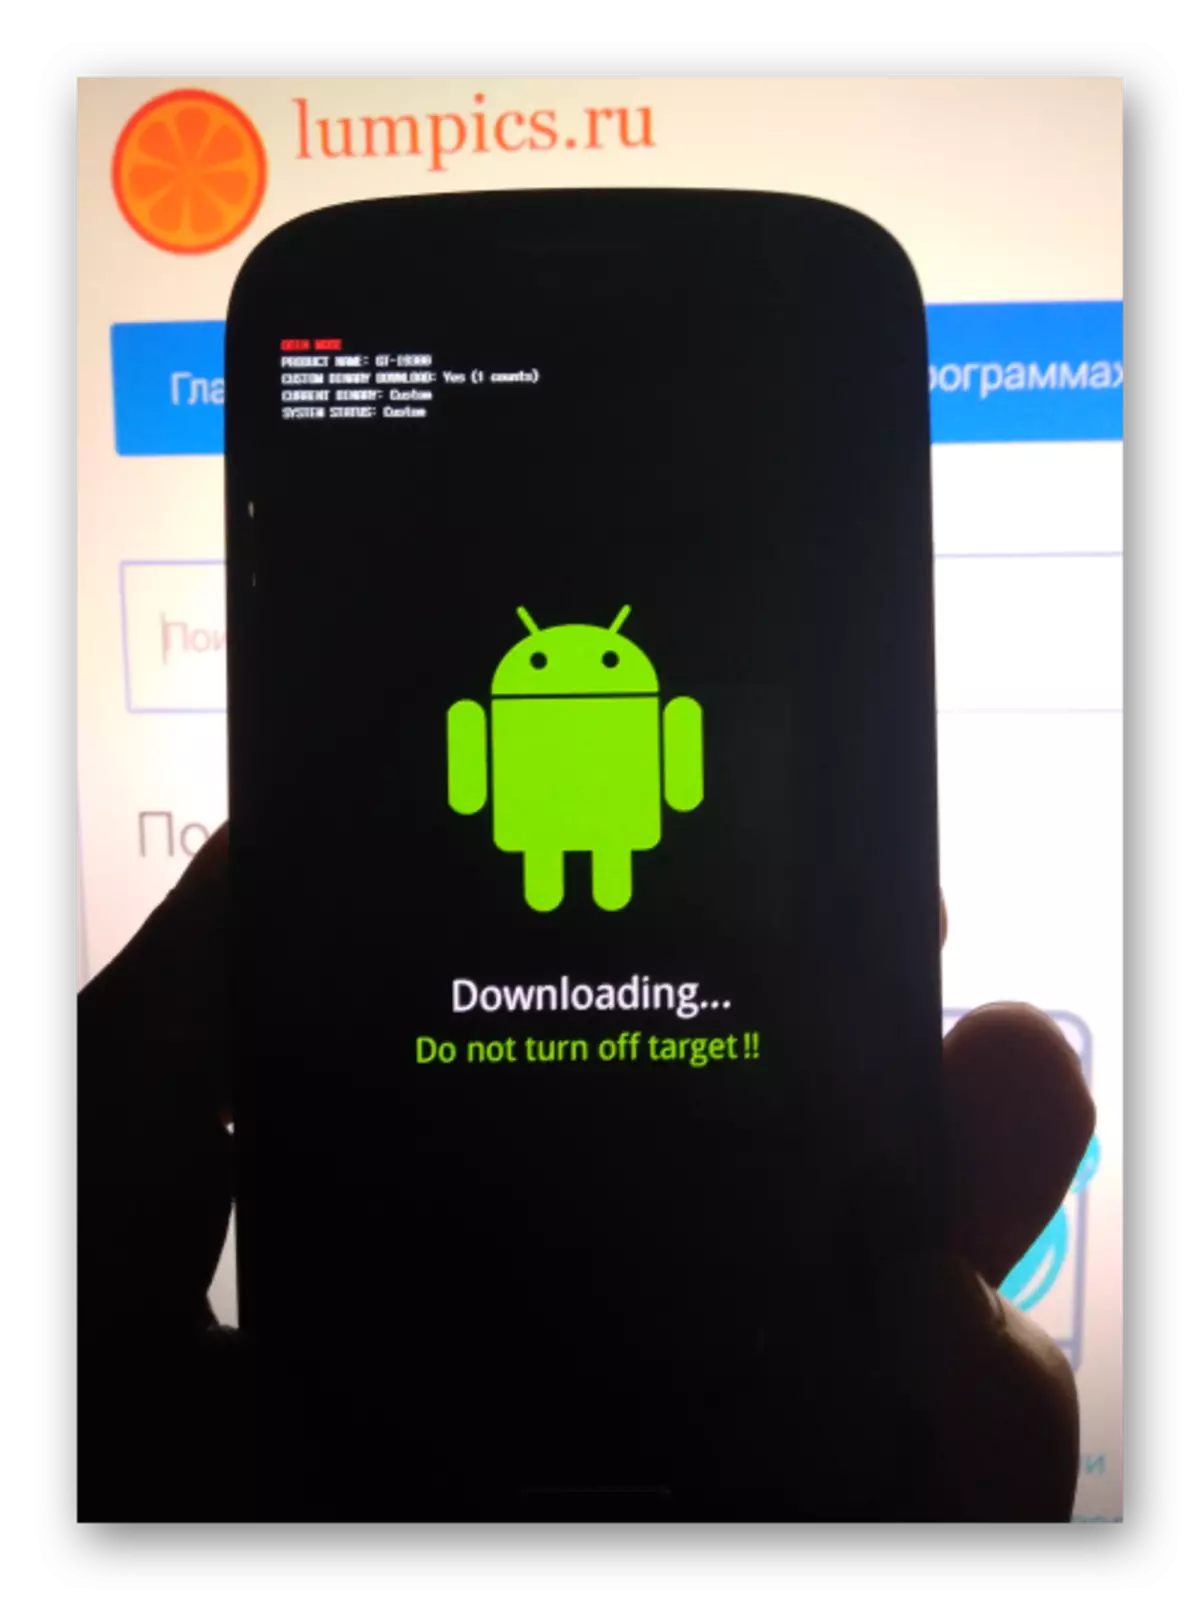 三星GT-I9300 Galaxy S III智能手机翻译成下载模式